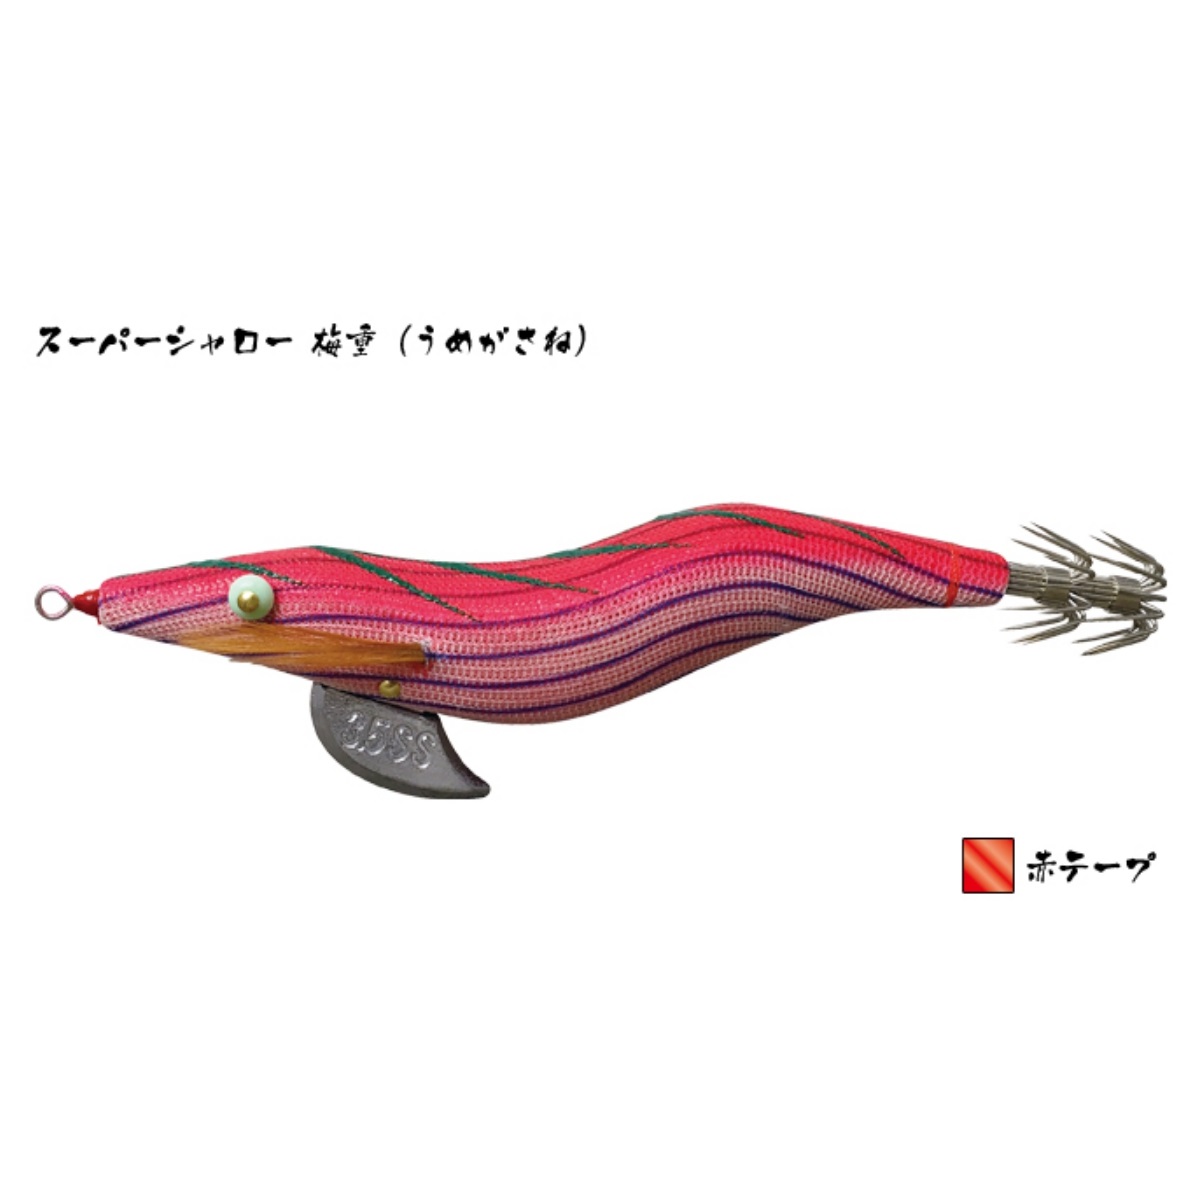 林釣漁具製作所/HAYASHI 餌木猿 SS 3.5号 スーパーシャロースローシンキング イカエギ(メール便対応)